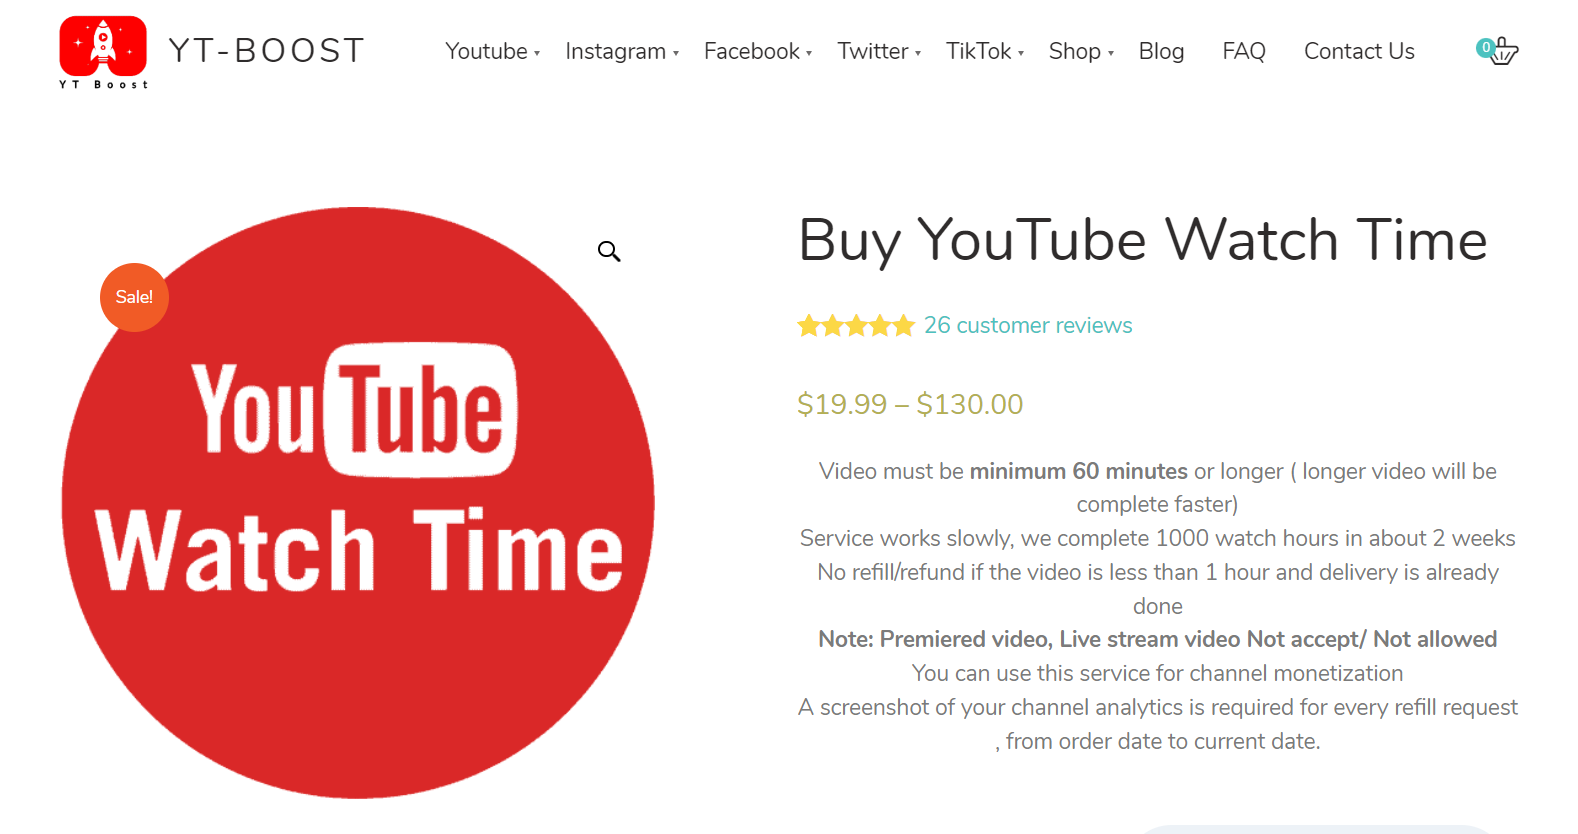 buy watchtime on youtube